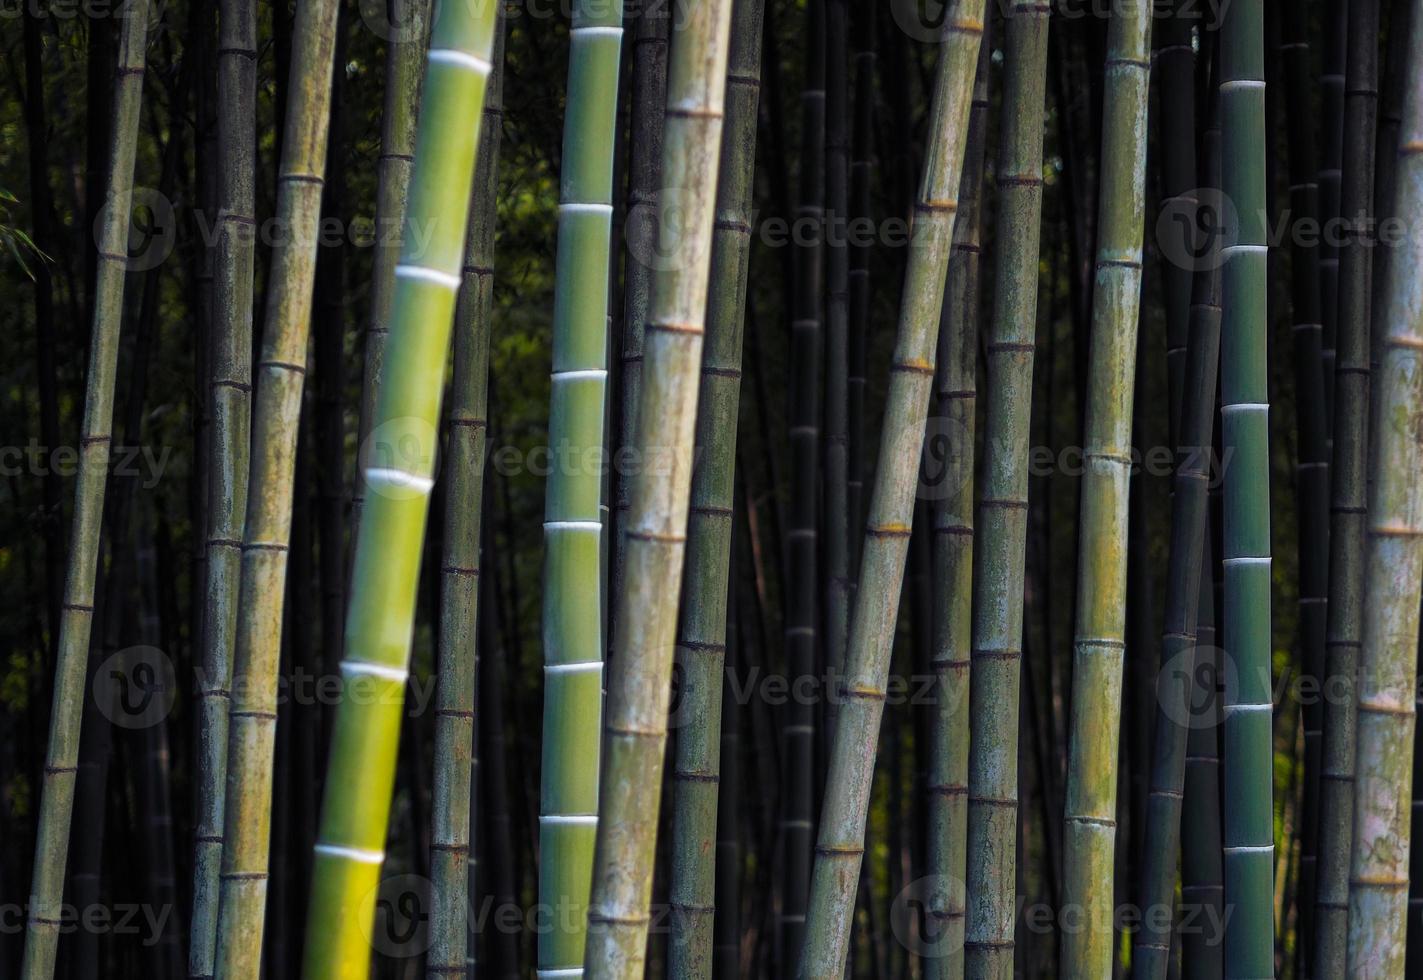 Bamboo background photo